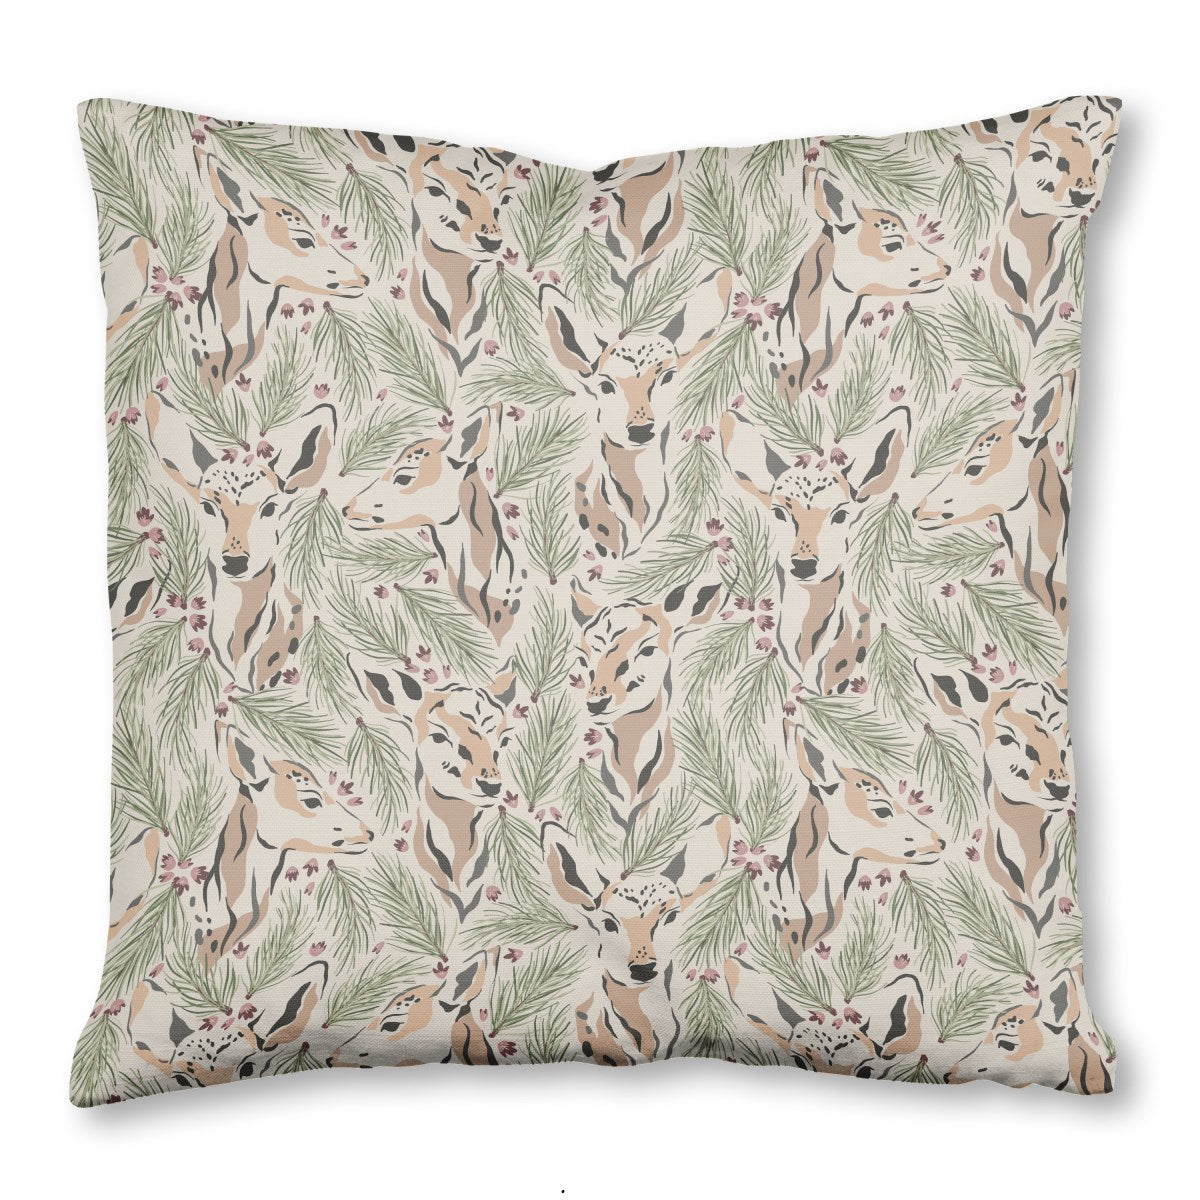 Evergreen Deer Throw Pillow